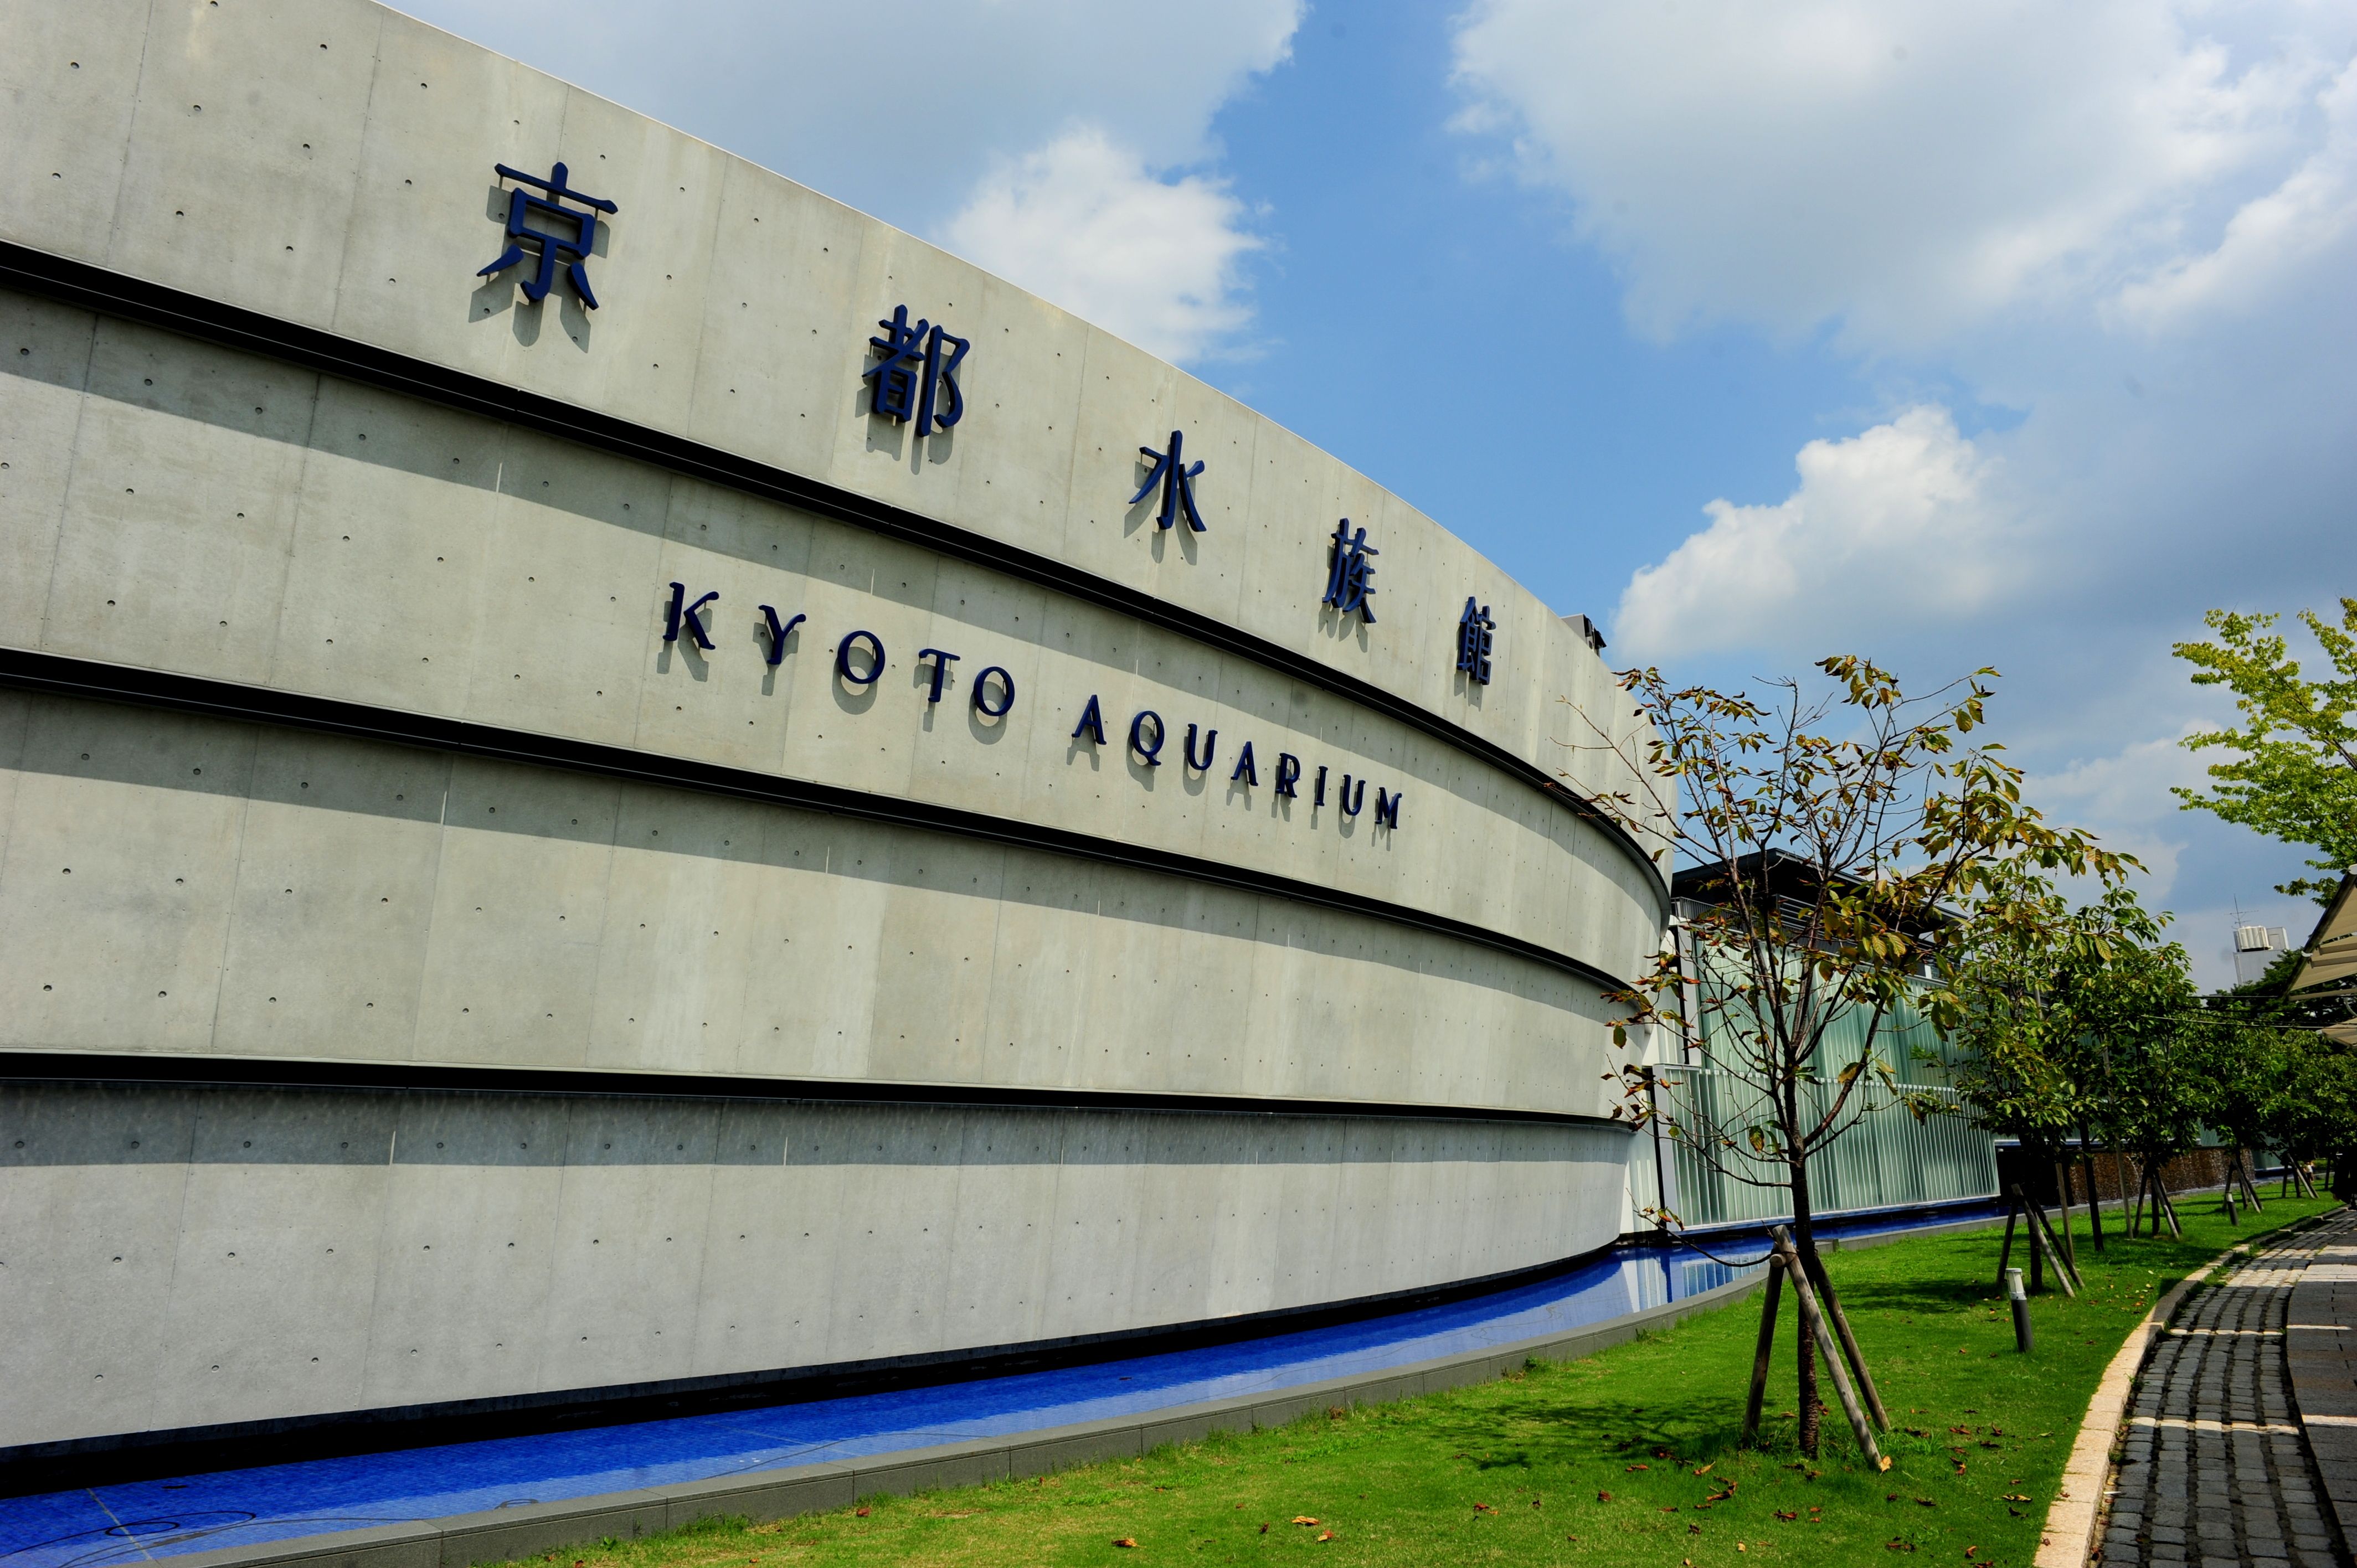 Kyoto Aquarium Admission Ticket